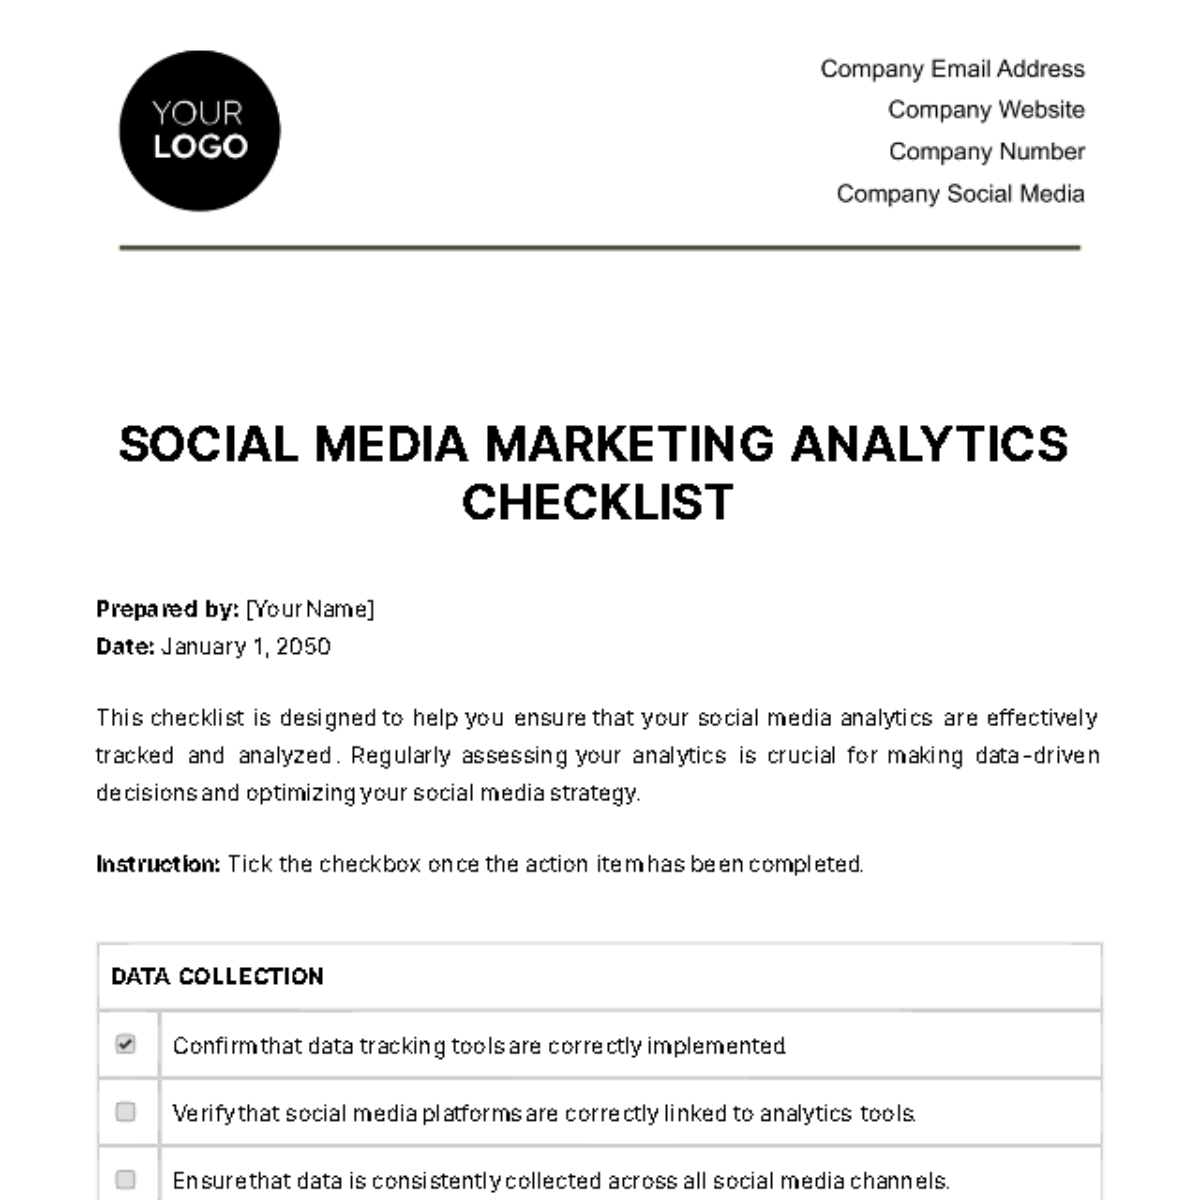 Social Media Marketing Analytics Checklist Template